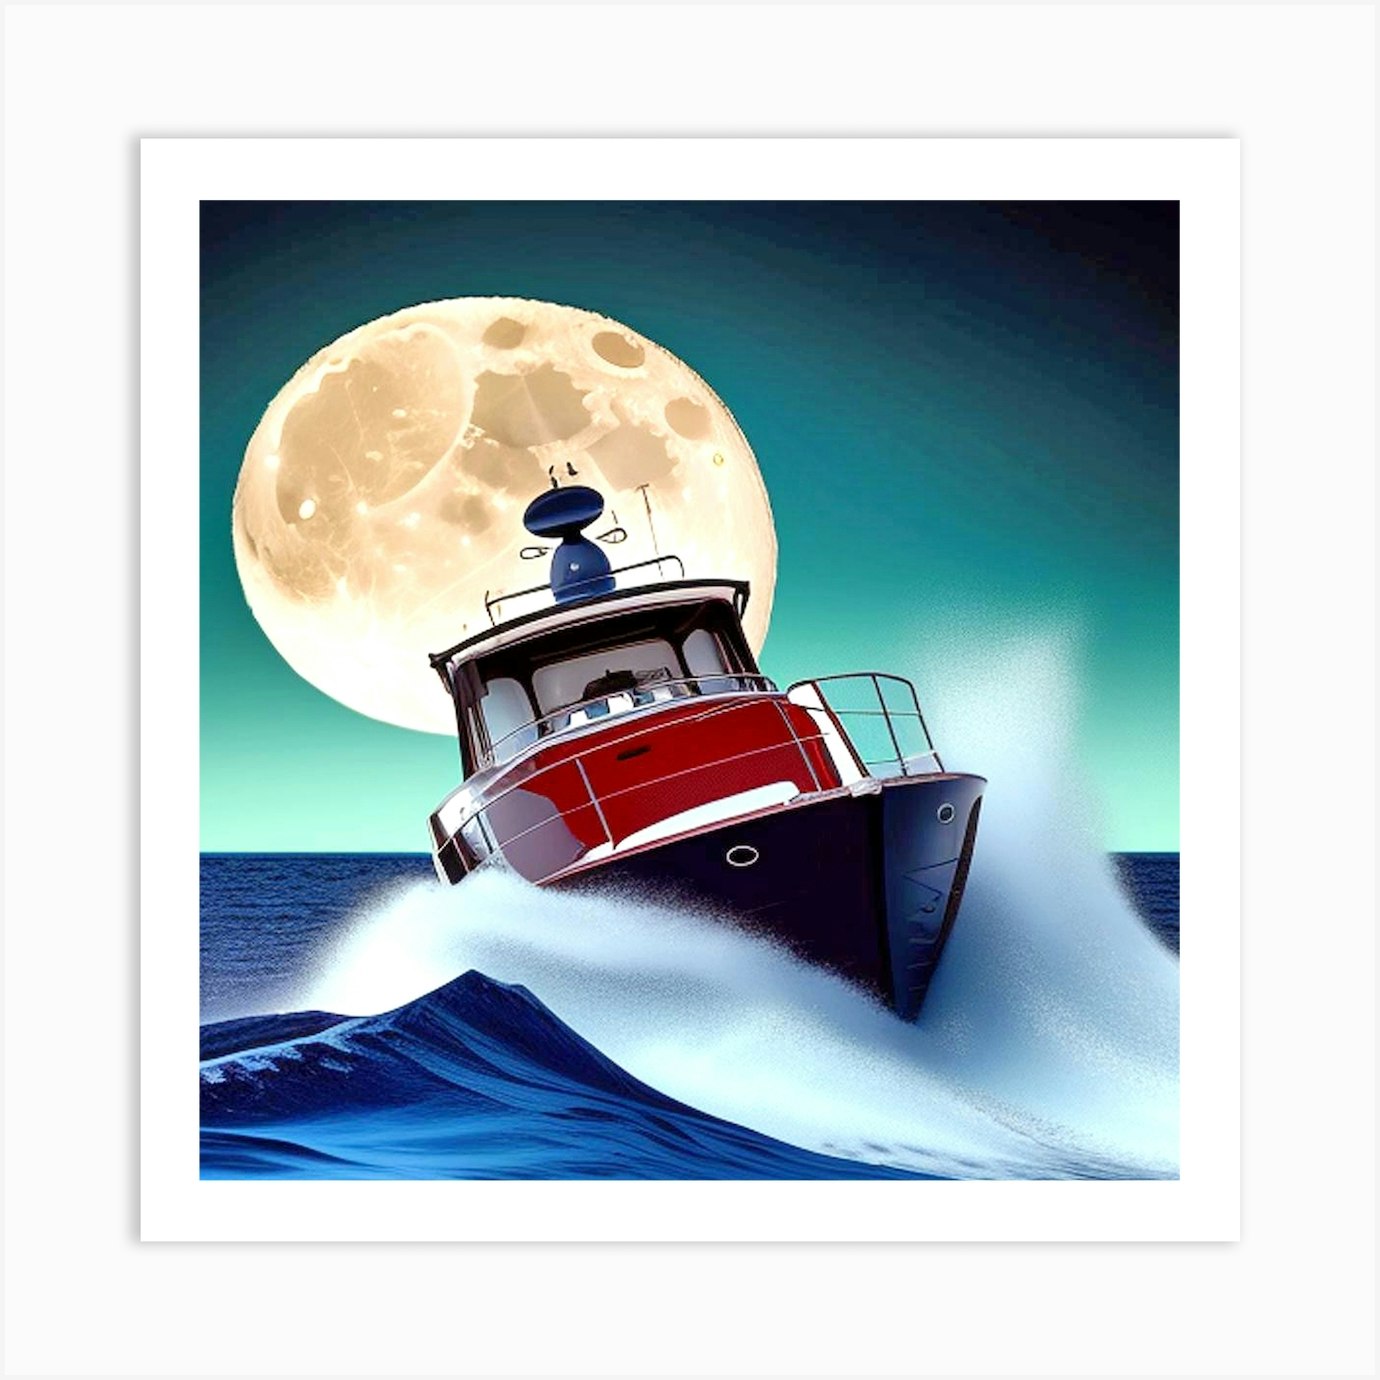 Boat In The Ocean 7 Art Print by MdsArts - Fy